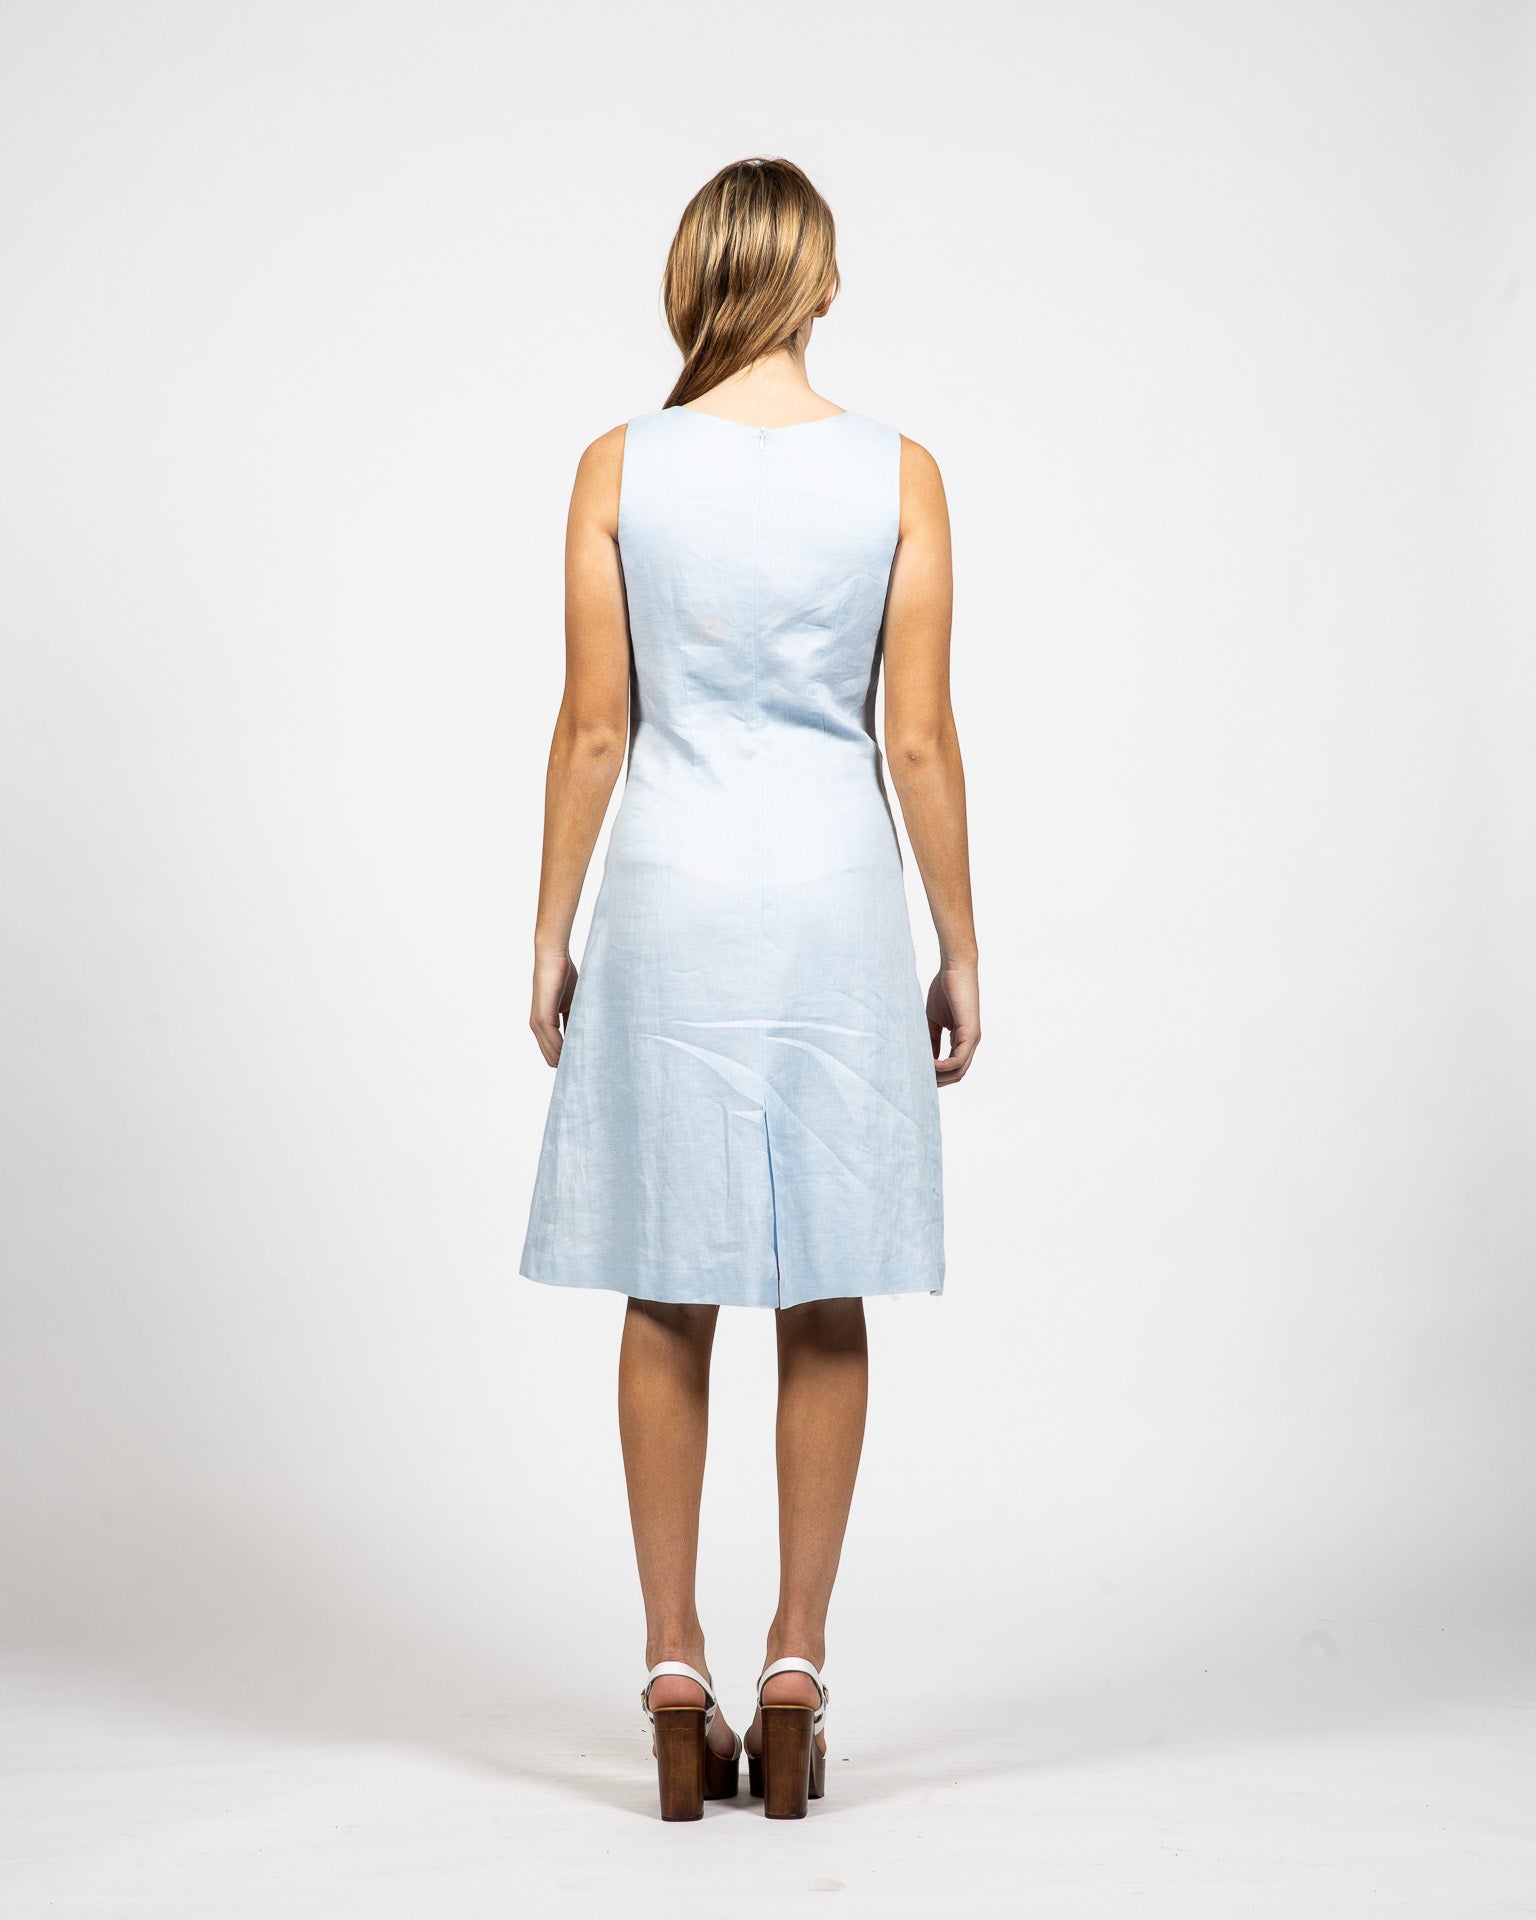 Crew Neck Light-Blue Linen Dress - Back View - Samuel Vartan